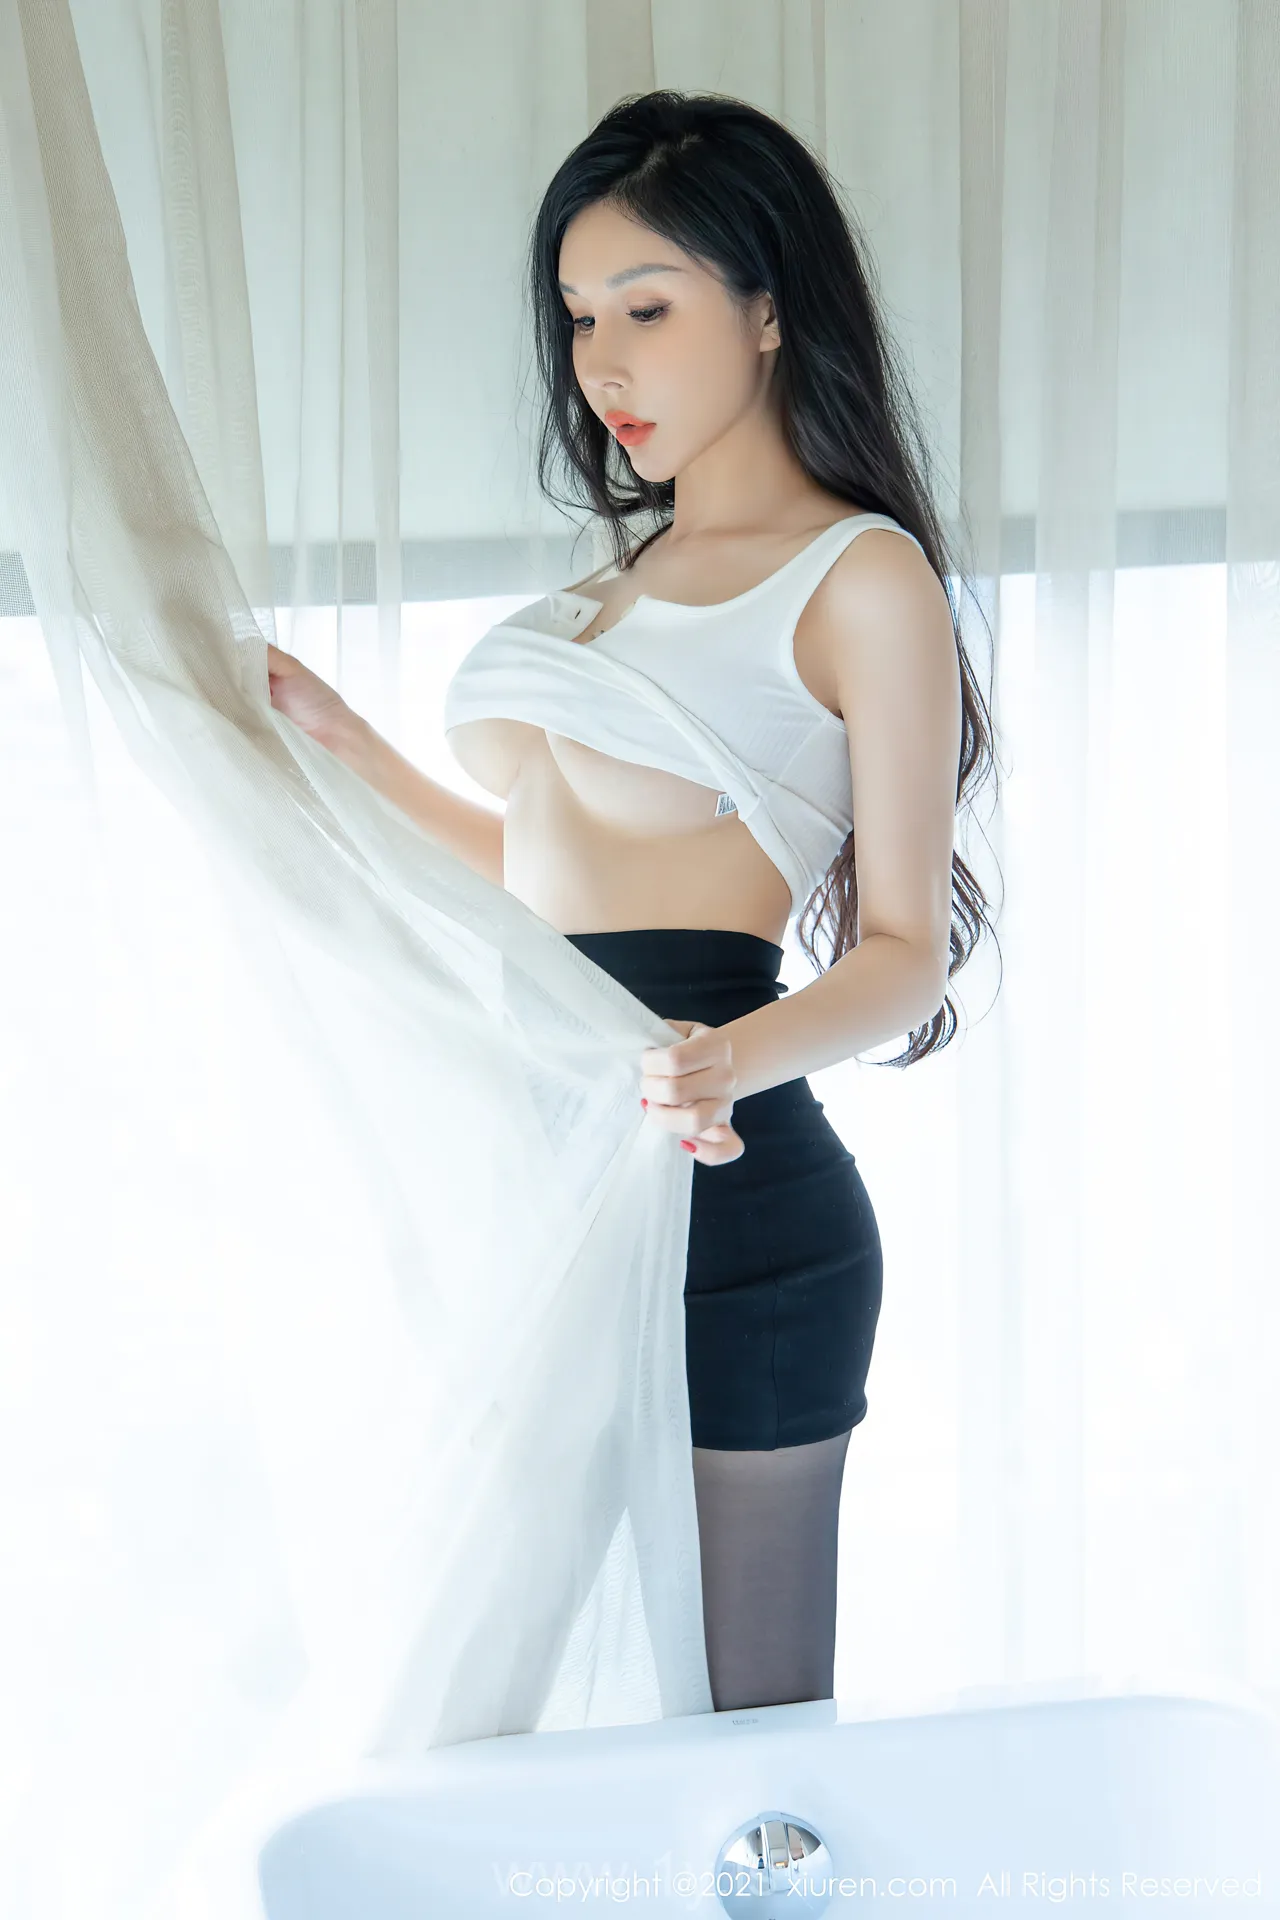 XIUREN(秀人网) NO.3993 Good-looking & Irresistible Asian Goddess 田冰冰